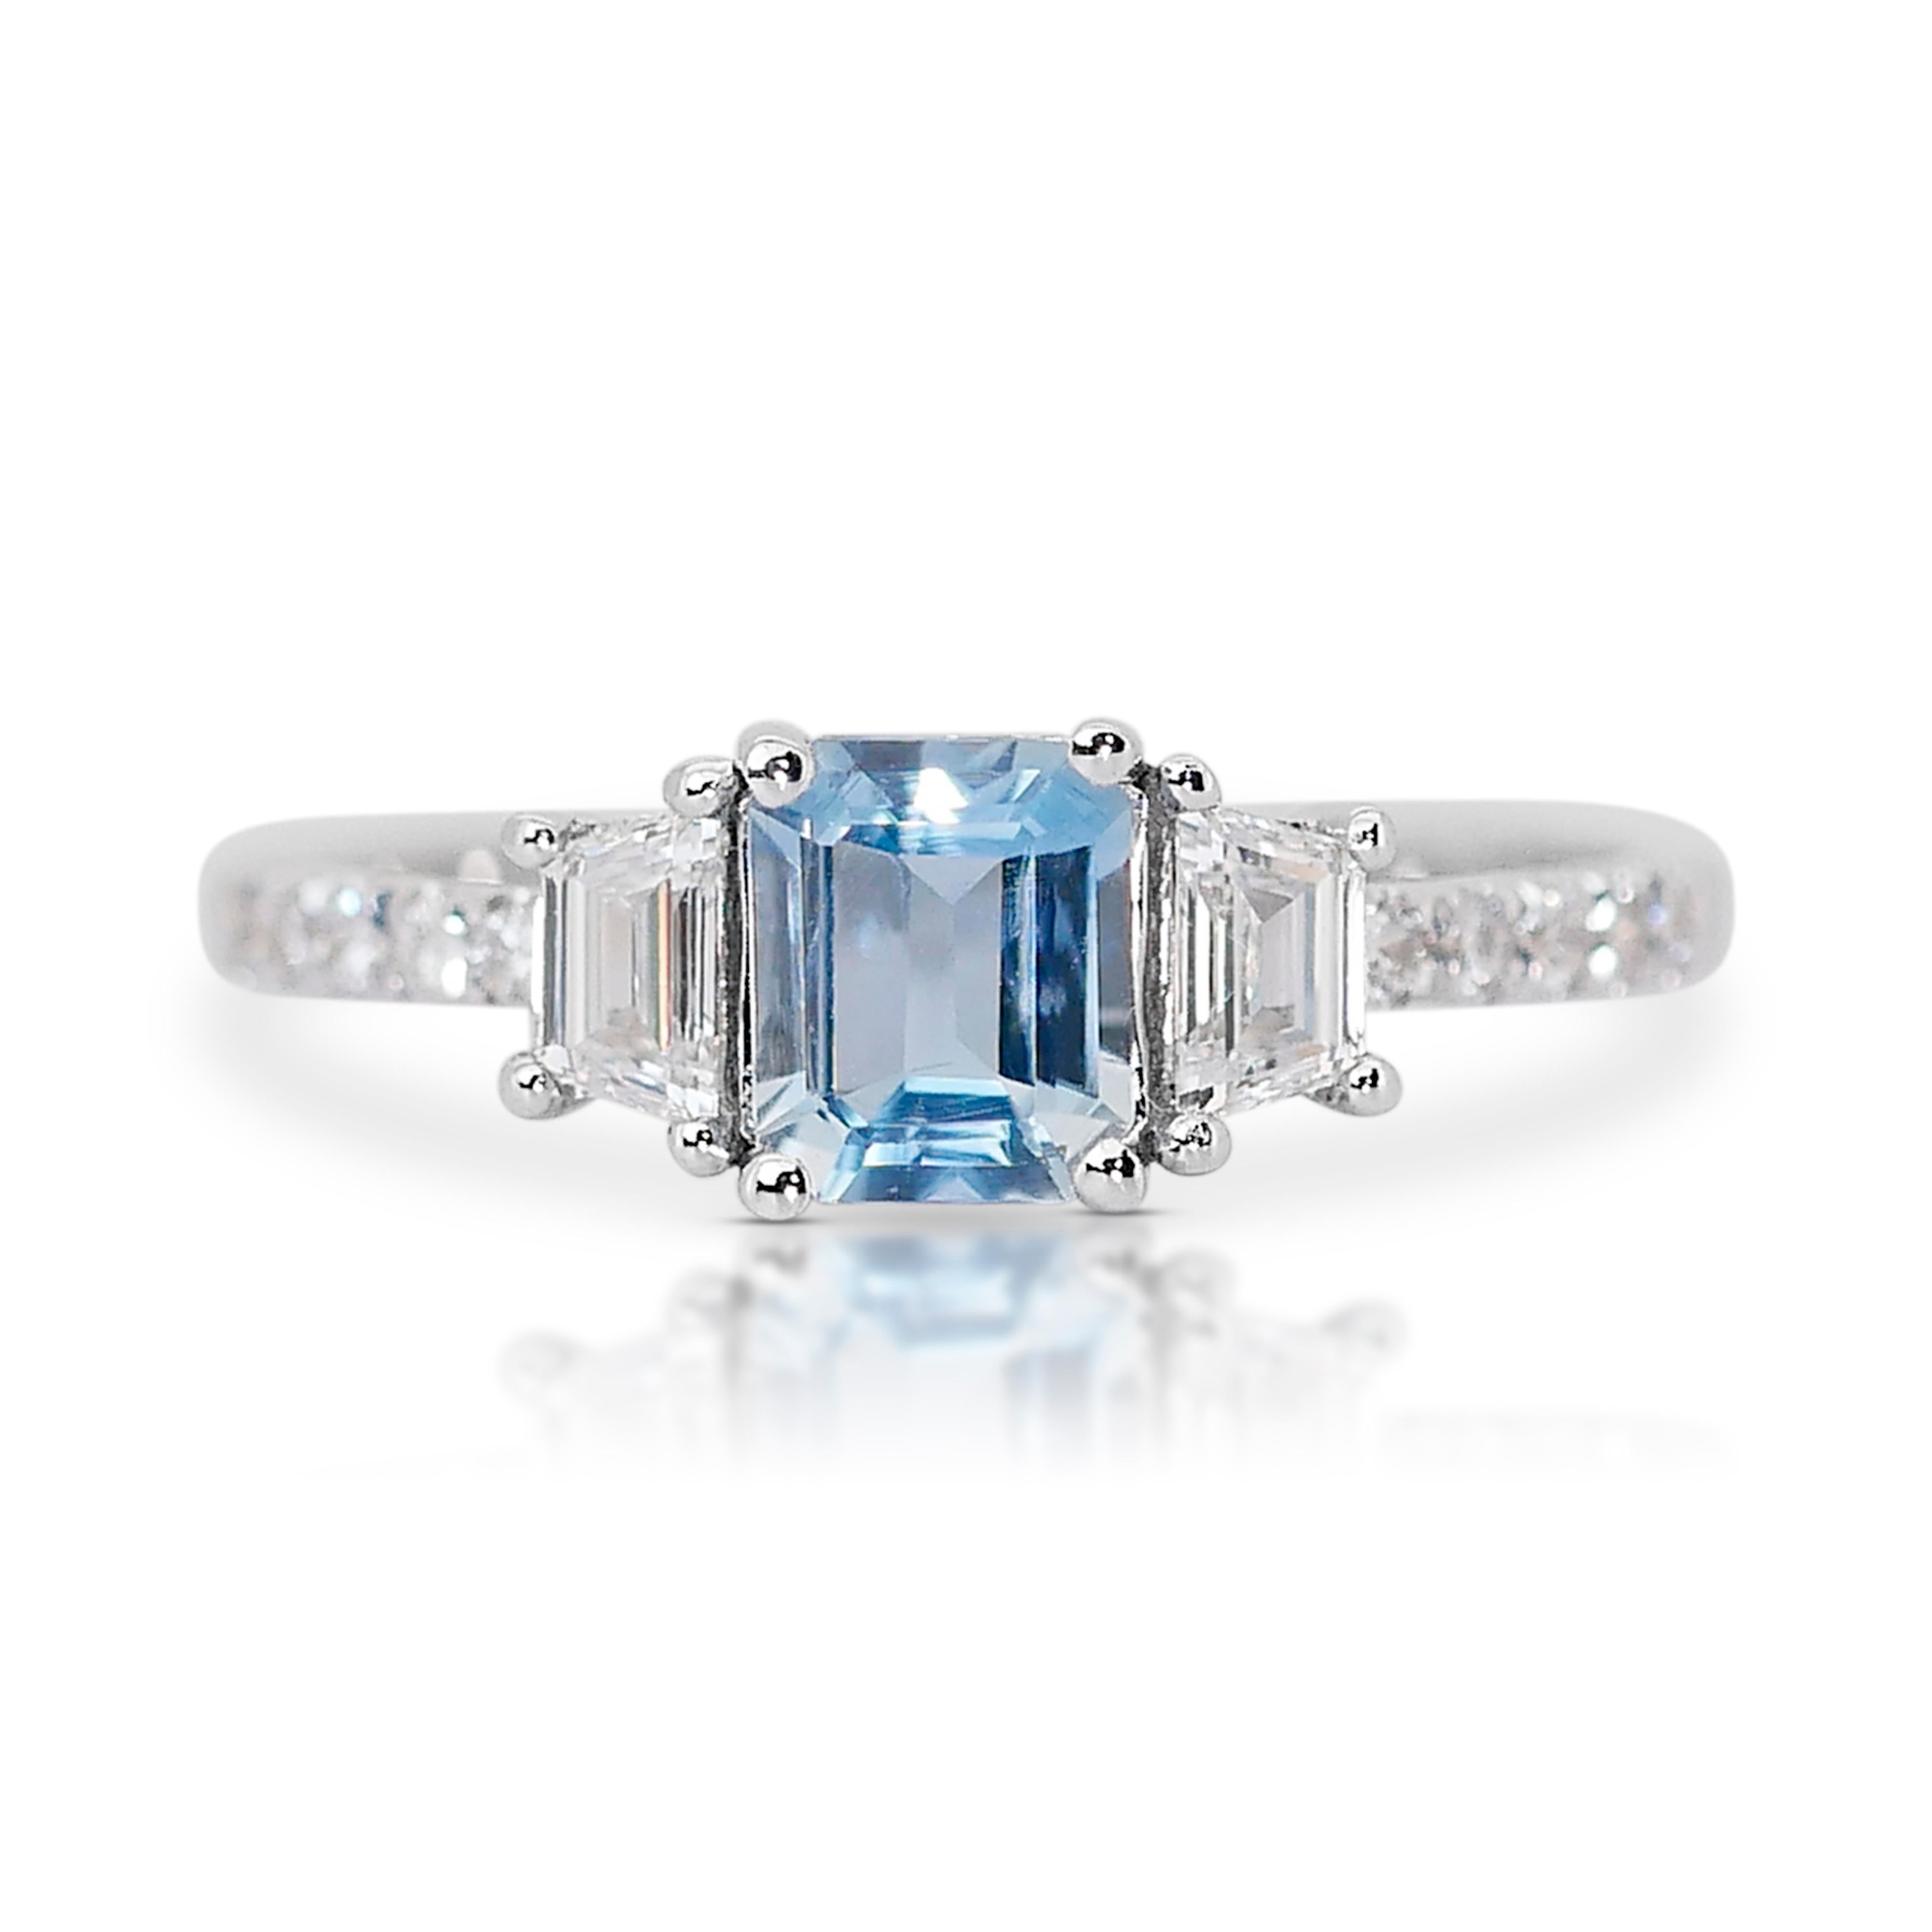 Elegant 1.28ct Aquamarine and Diamonds 3-Stone Ring in 18k White Gold - IGI Cert For Sale 3